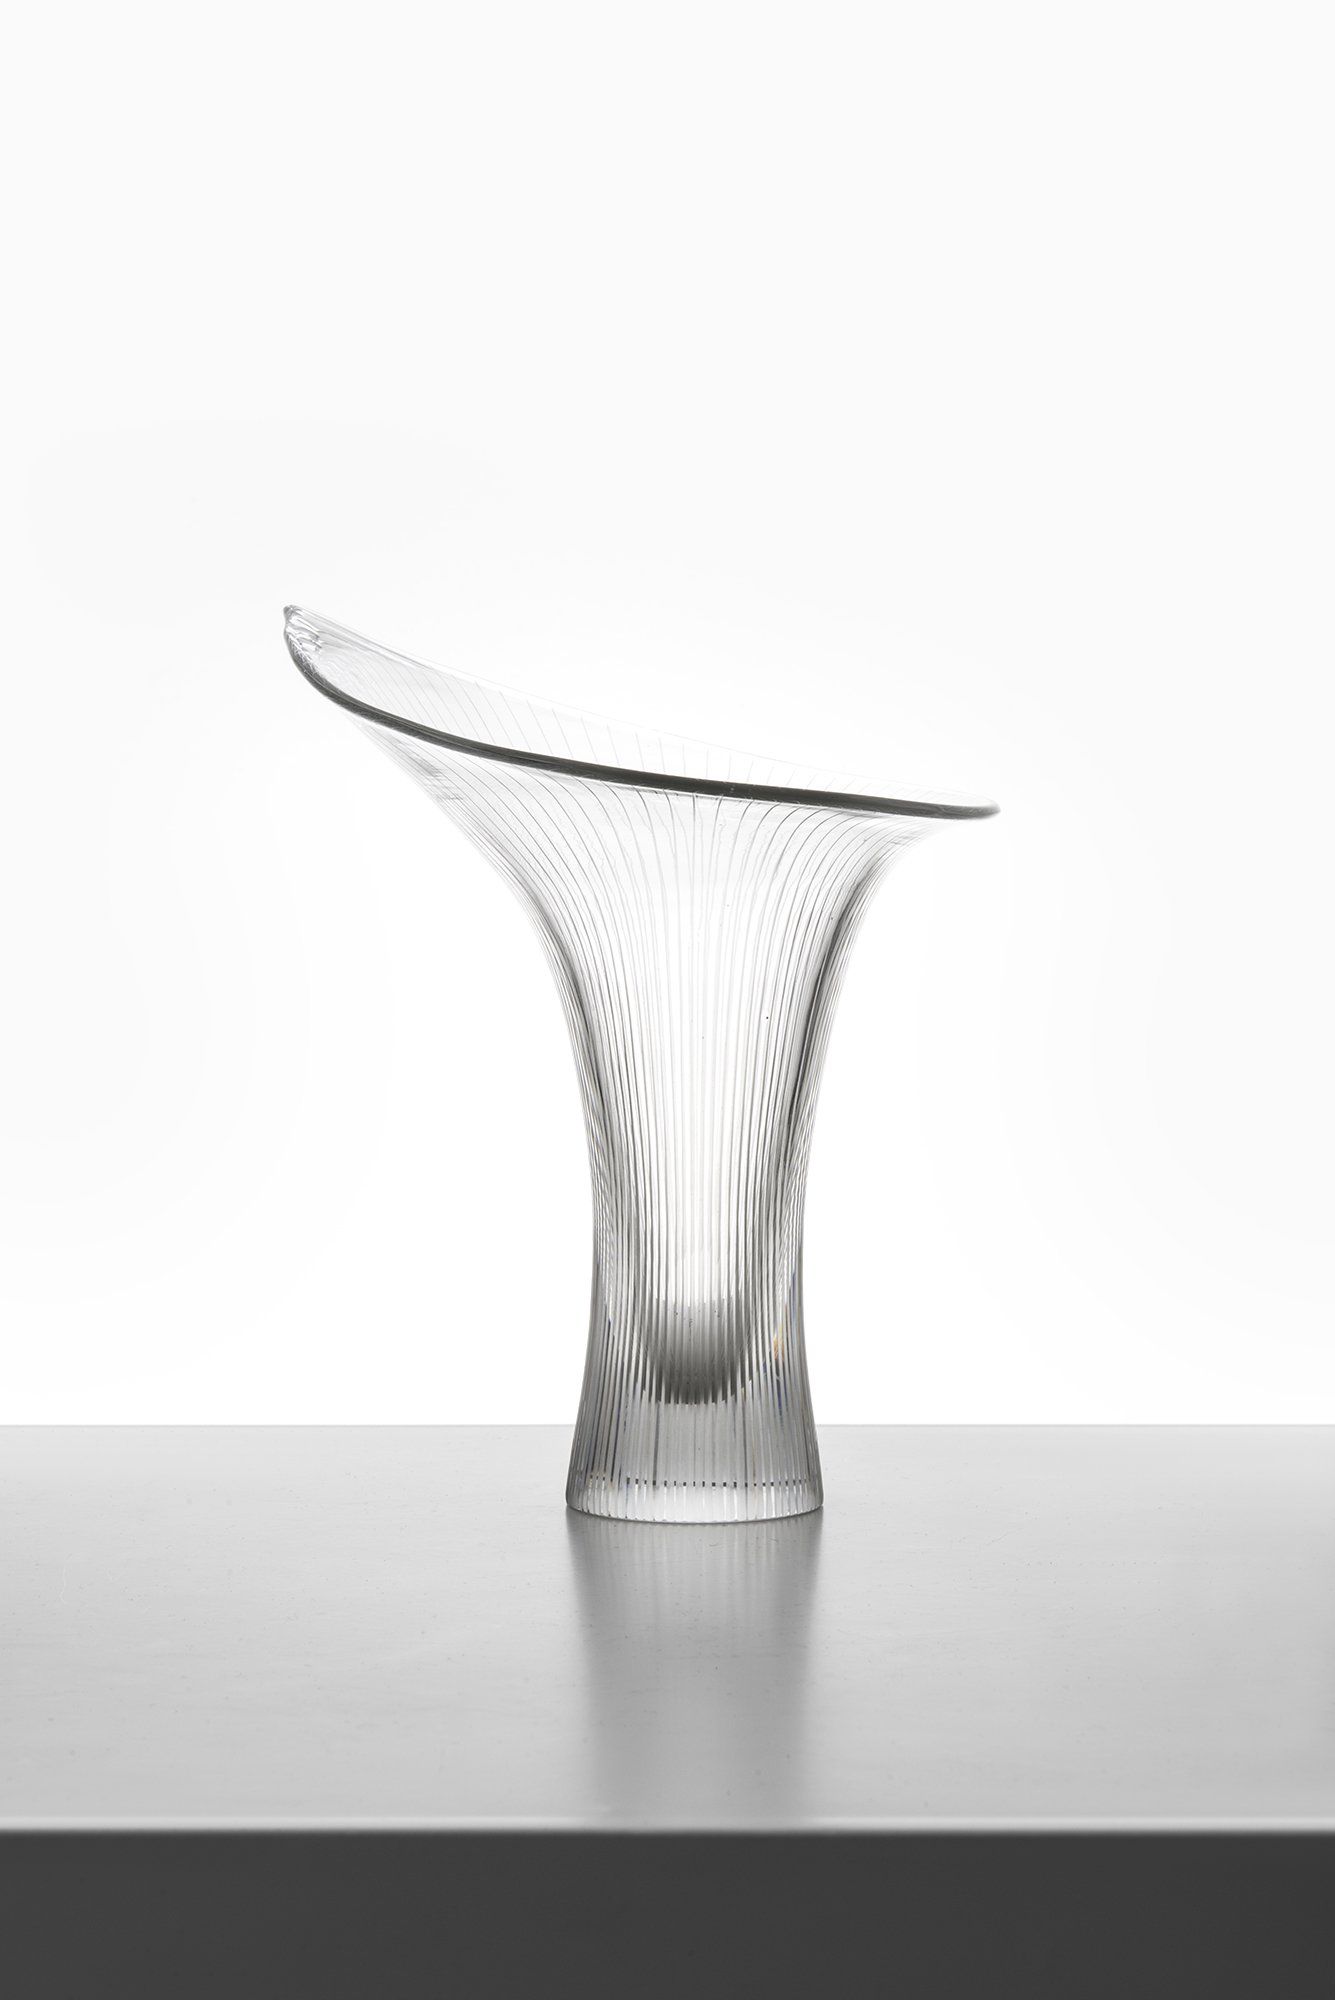 Tapio Wirkkala Vase Model 'Kantarelli' Produced by Iittala